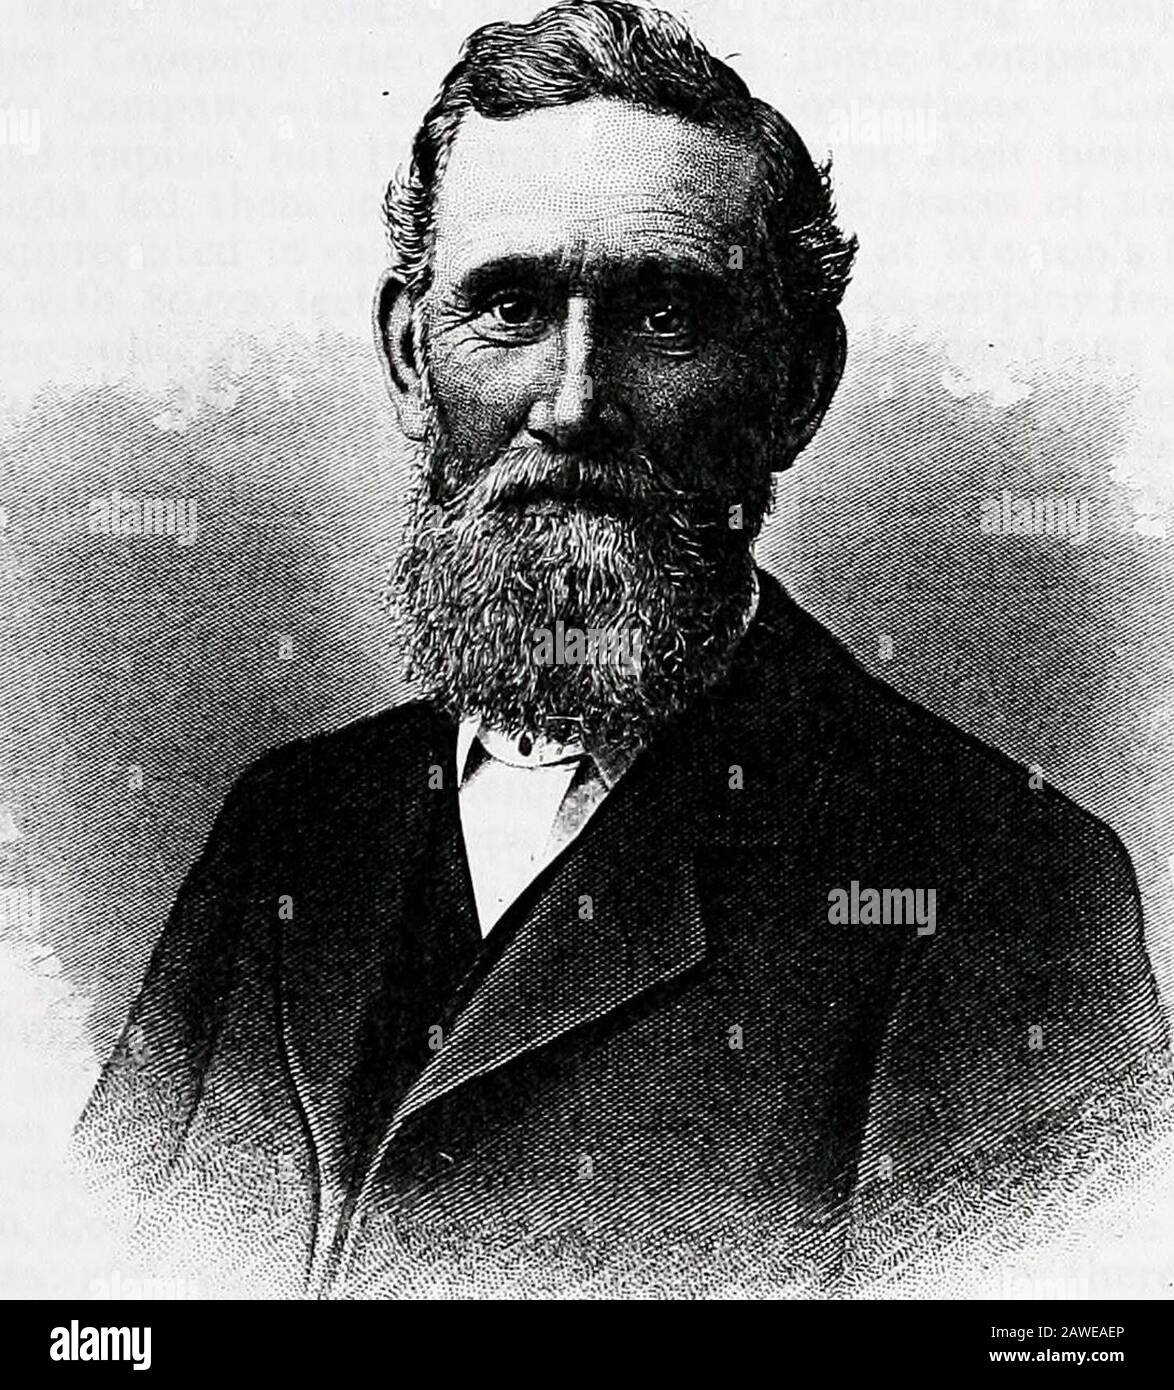 Gazetteer historique et mémorial biographique du comté de Cattaraugus, N.Y . est devenu un lumberman. En 1849, il est connectéavec la compagnie de bois d'oeuvre (Fox, Weston & Bronson) à Painted Post, Steubrencontrty, dont son frère aîné, Abijah, était membre. En 1850, il campeto la vallée de l'Allegany le membre junior de la firme Weston Brothers(A., O., et W. W. Weston), qui, en compagnie de John G. Mersereau, a pourchassé un petit moulin à l'embouchure de l'Osnayo, le réaménagé, et les méthodes roughteastern et la scie de gang à la révolution complète des luberingméthodes dans cette section. C'était le commencem Banque D'Images